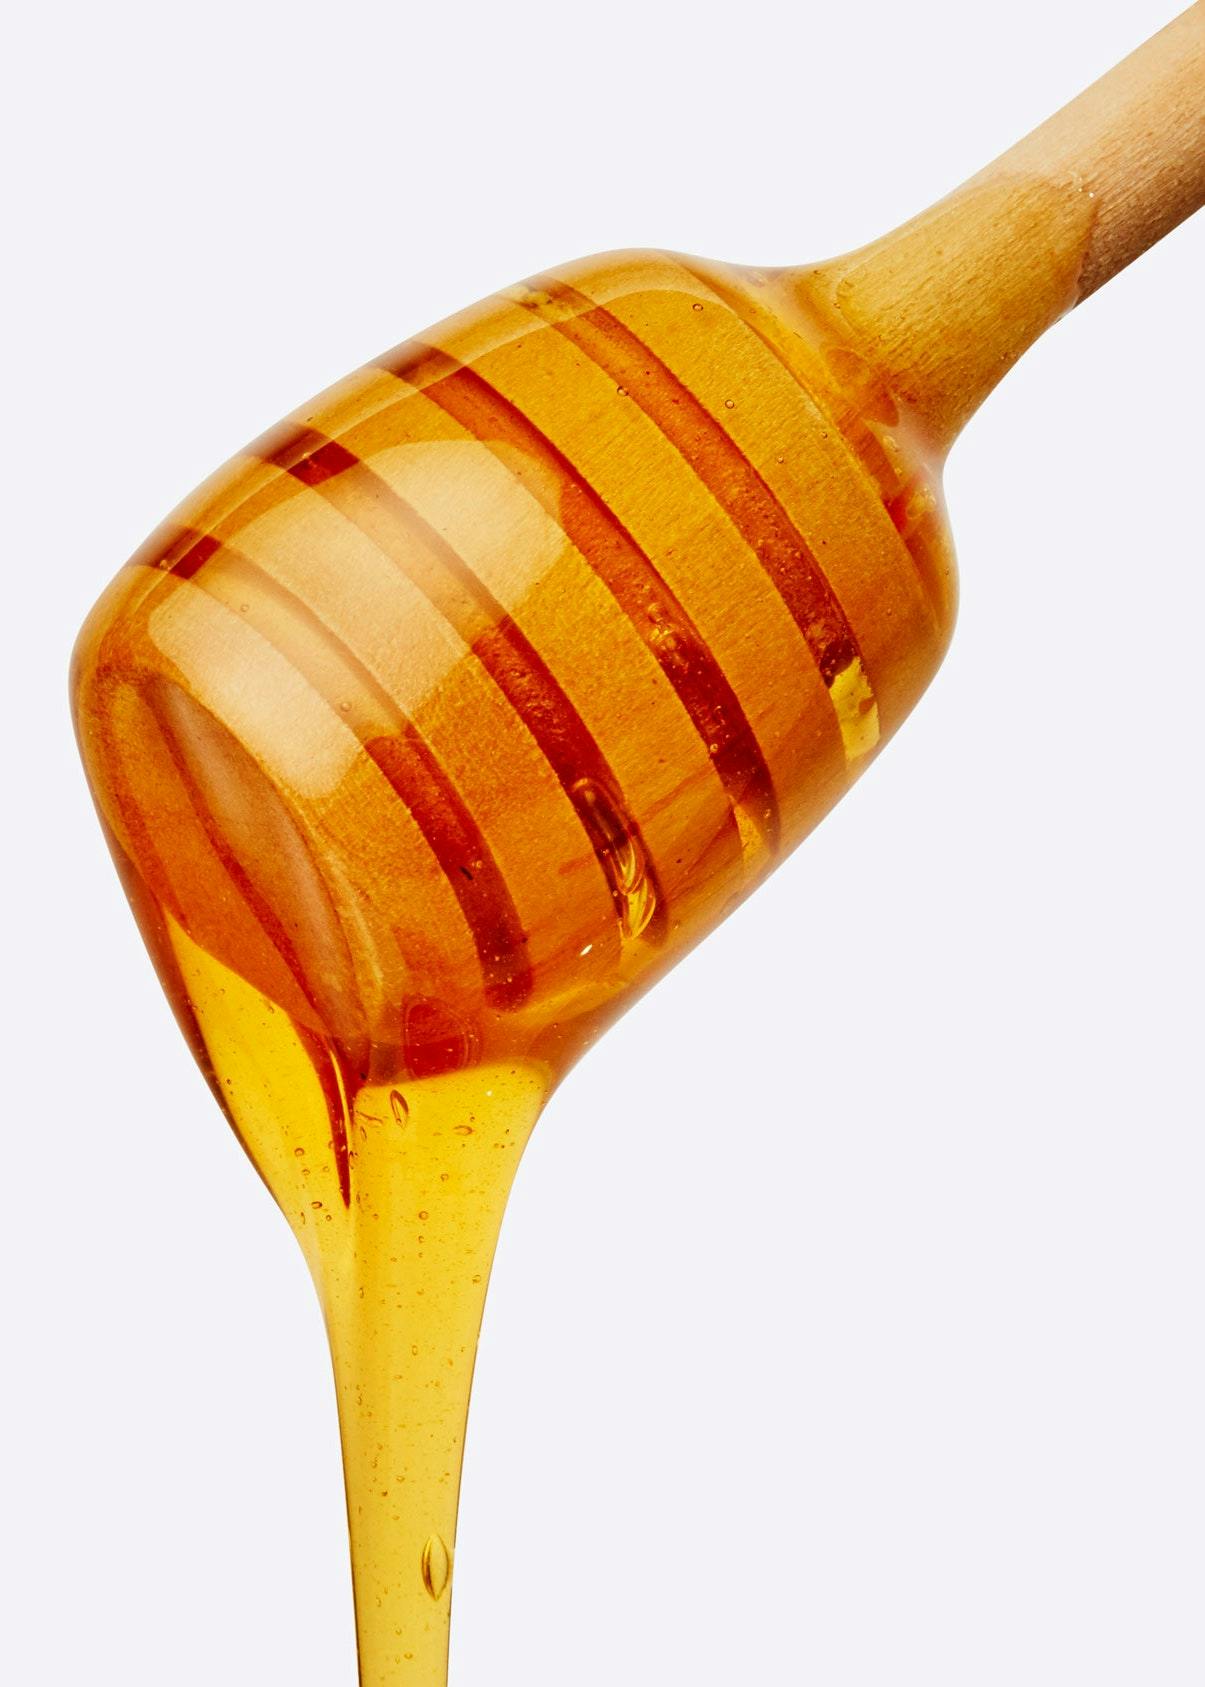 honey to taste